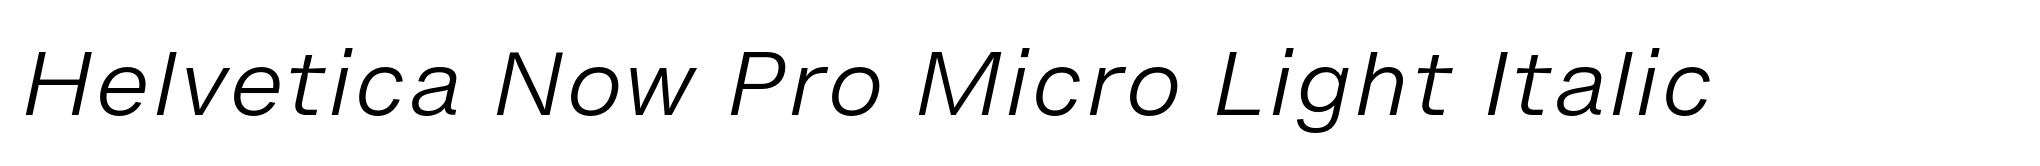 Helvetica Now Pro Micro Light Italic image